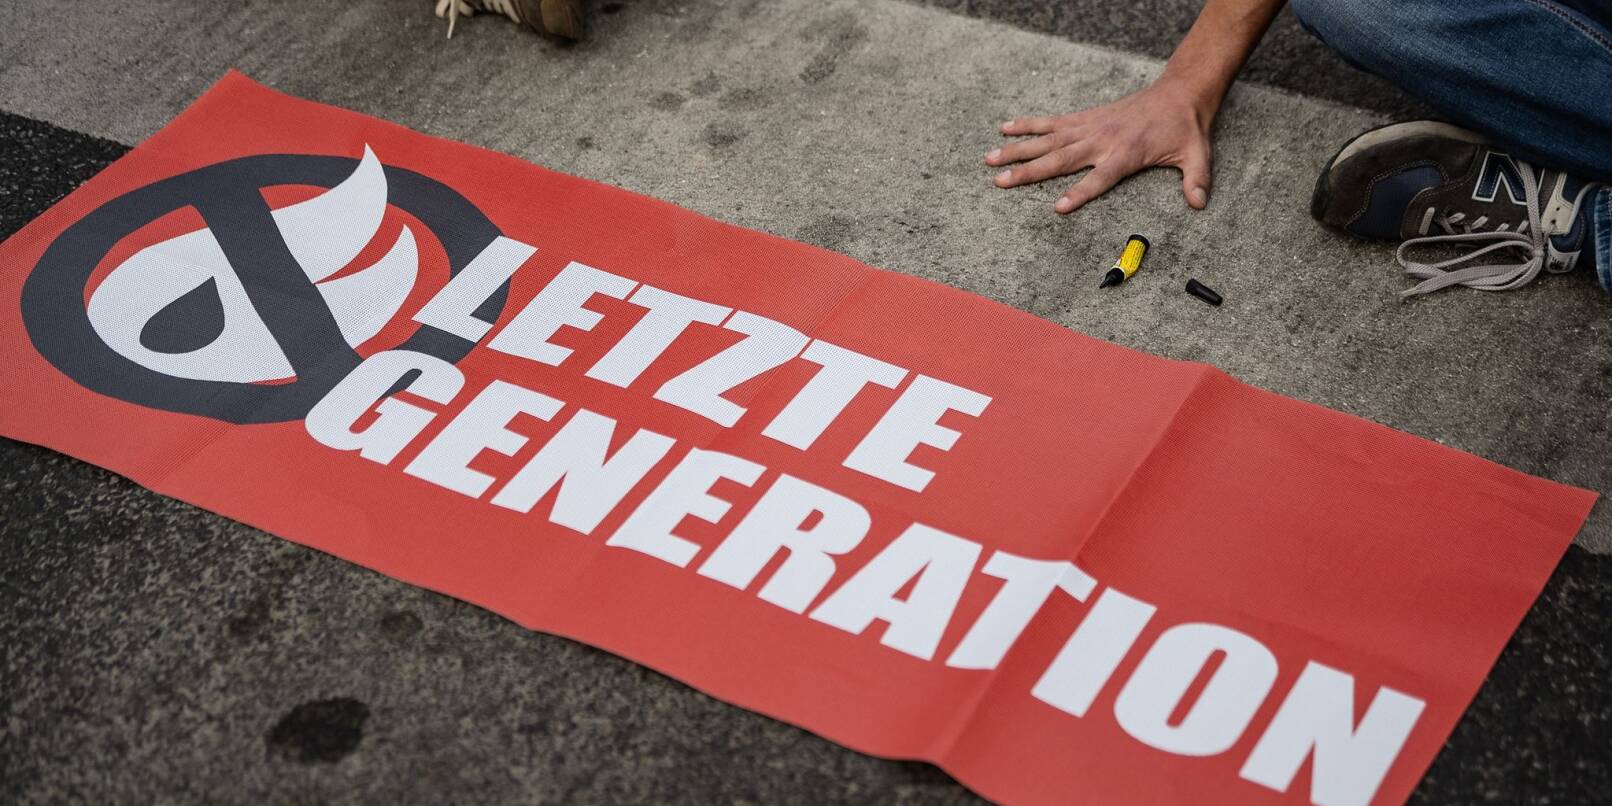 Ein Aktivist der Gruppe Letzte Generation hat seine Hand auf der Straße festgeklebt und blockiert eine Kreuzung.